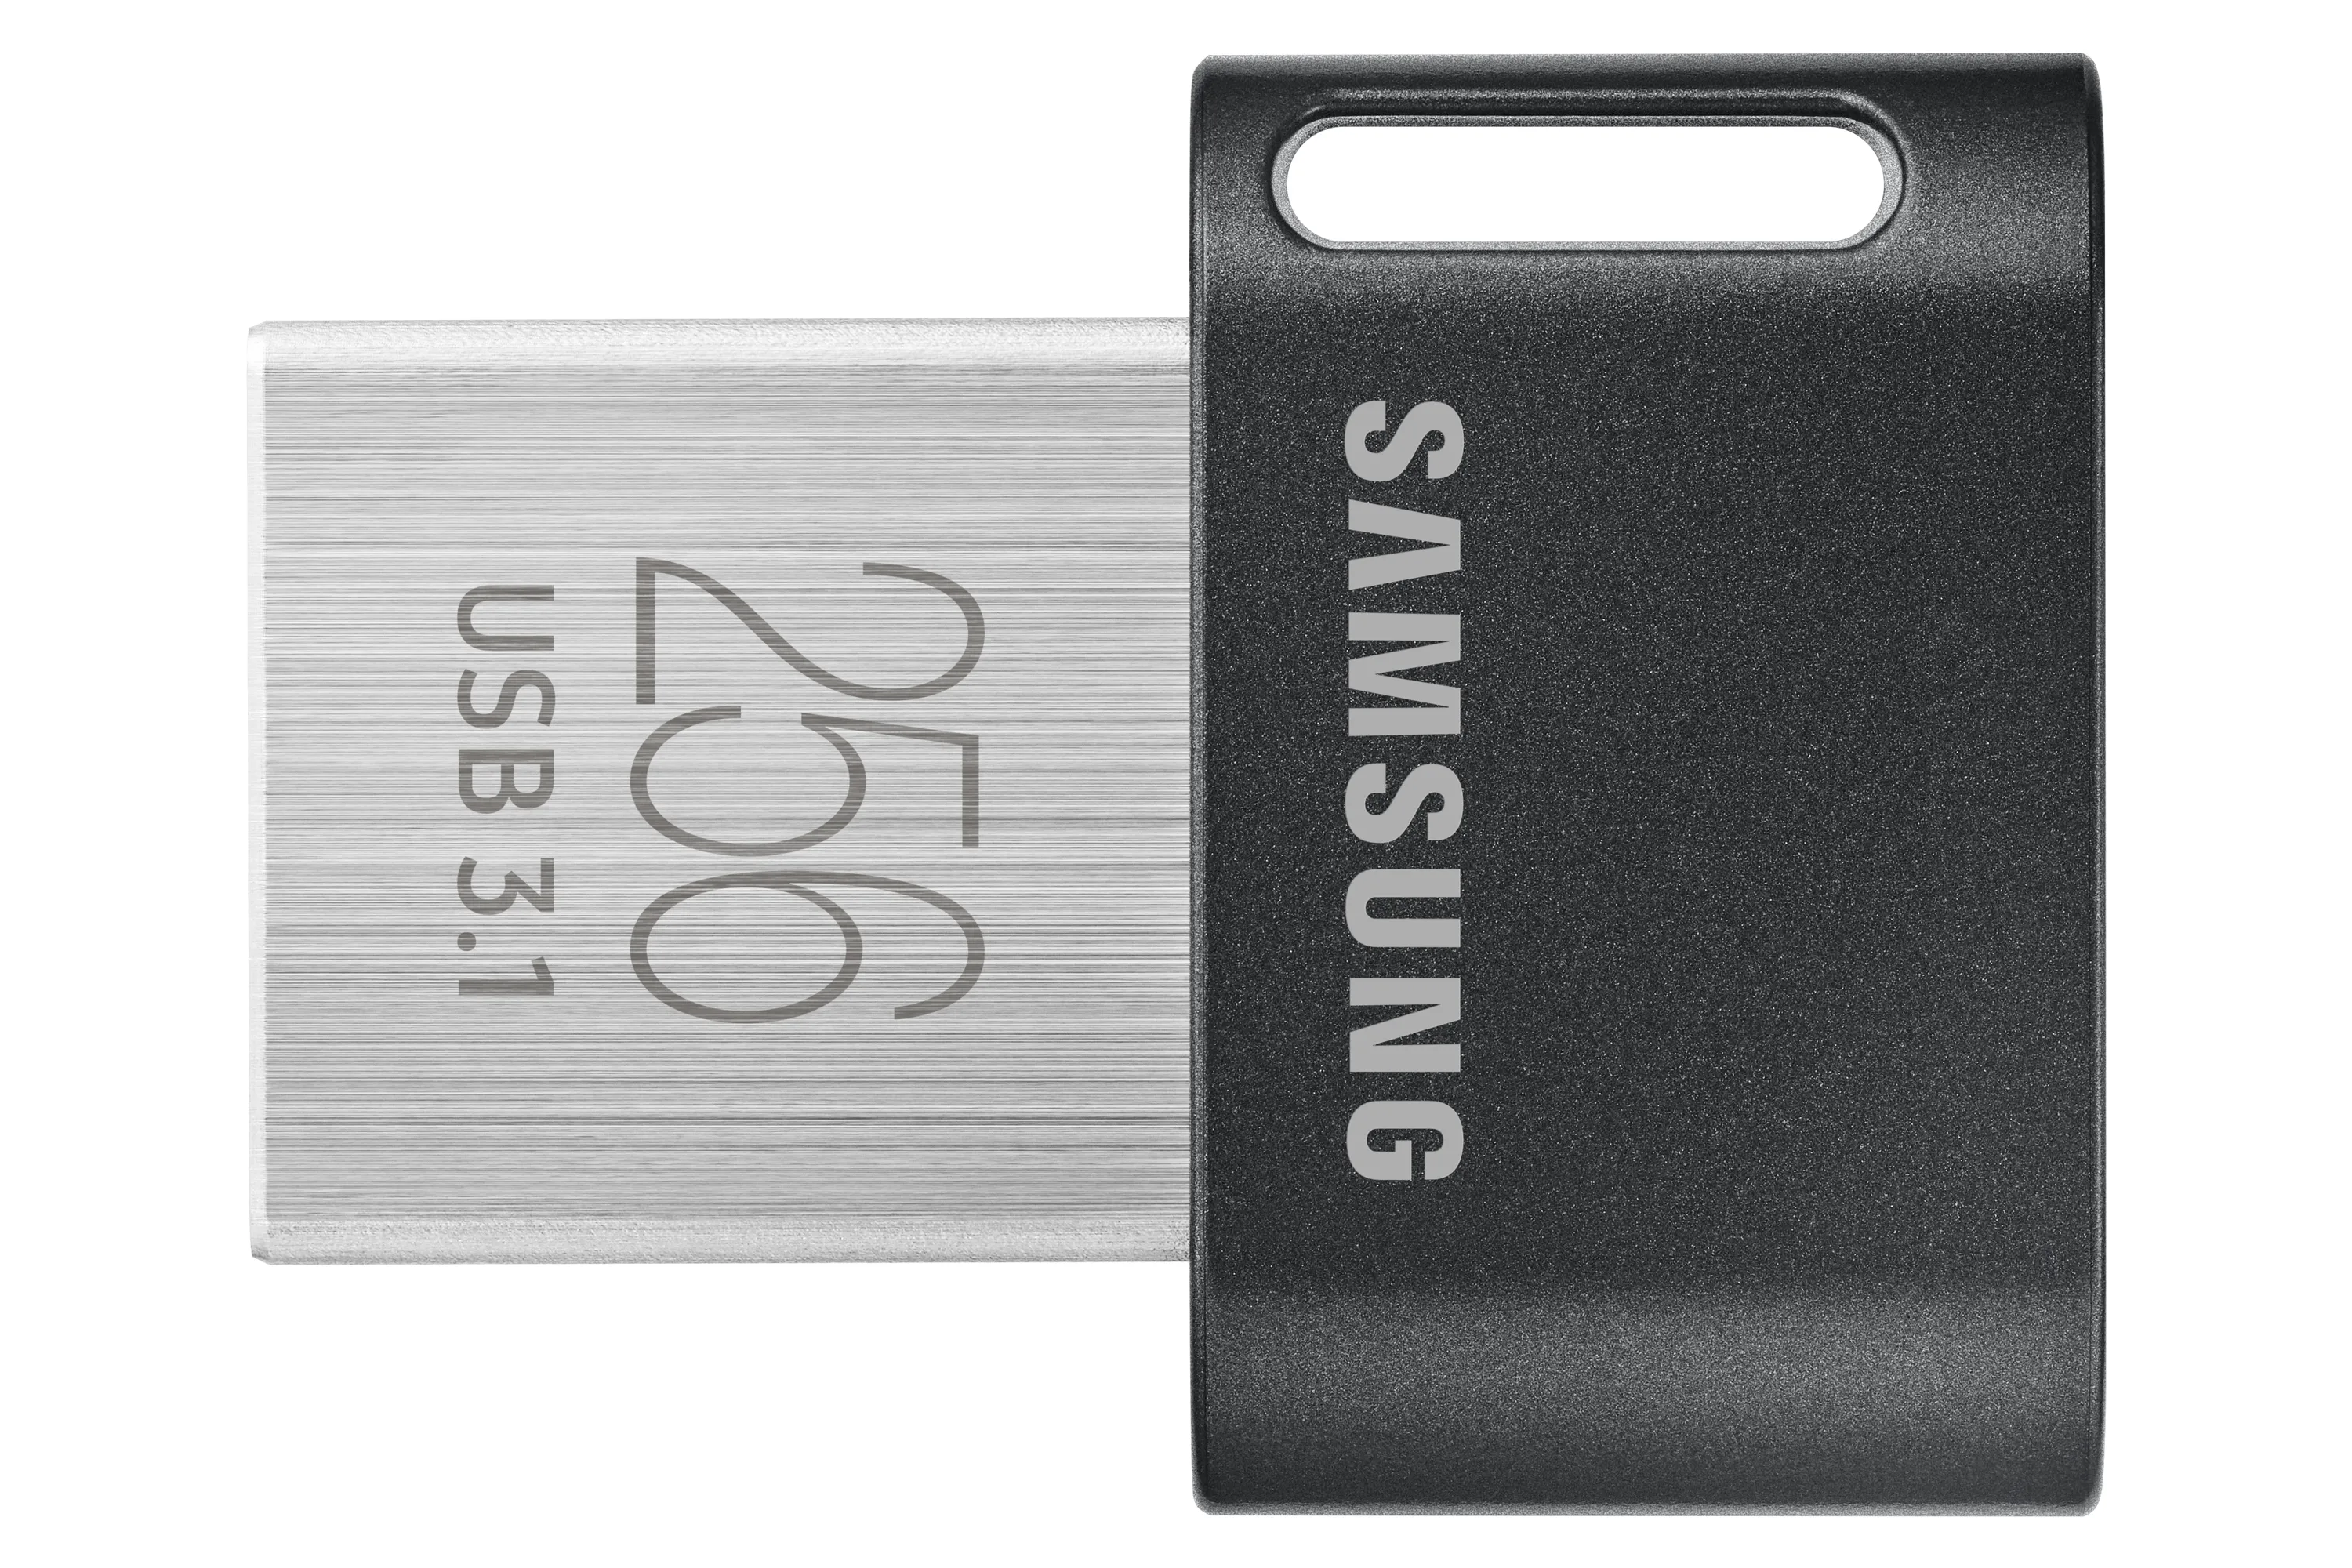 Vente SAMSUNG FIT PLUS 256Go USB 3.1 Samsung au meilleur prix - visuel 8